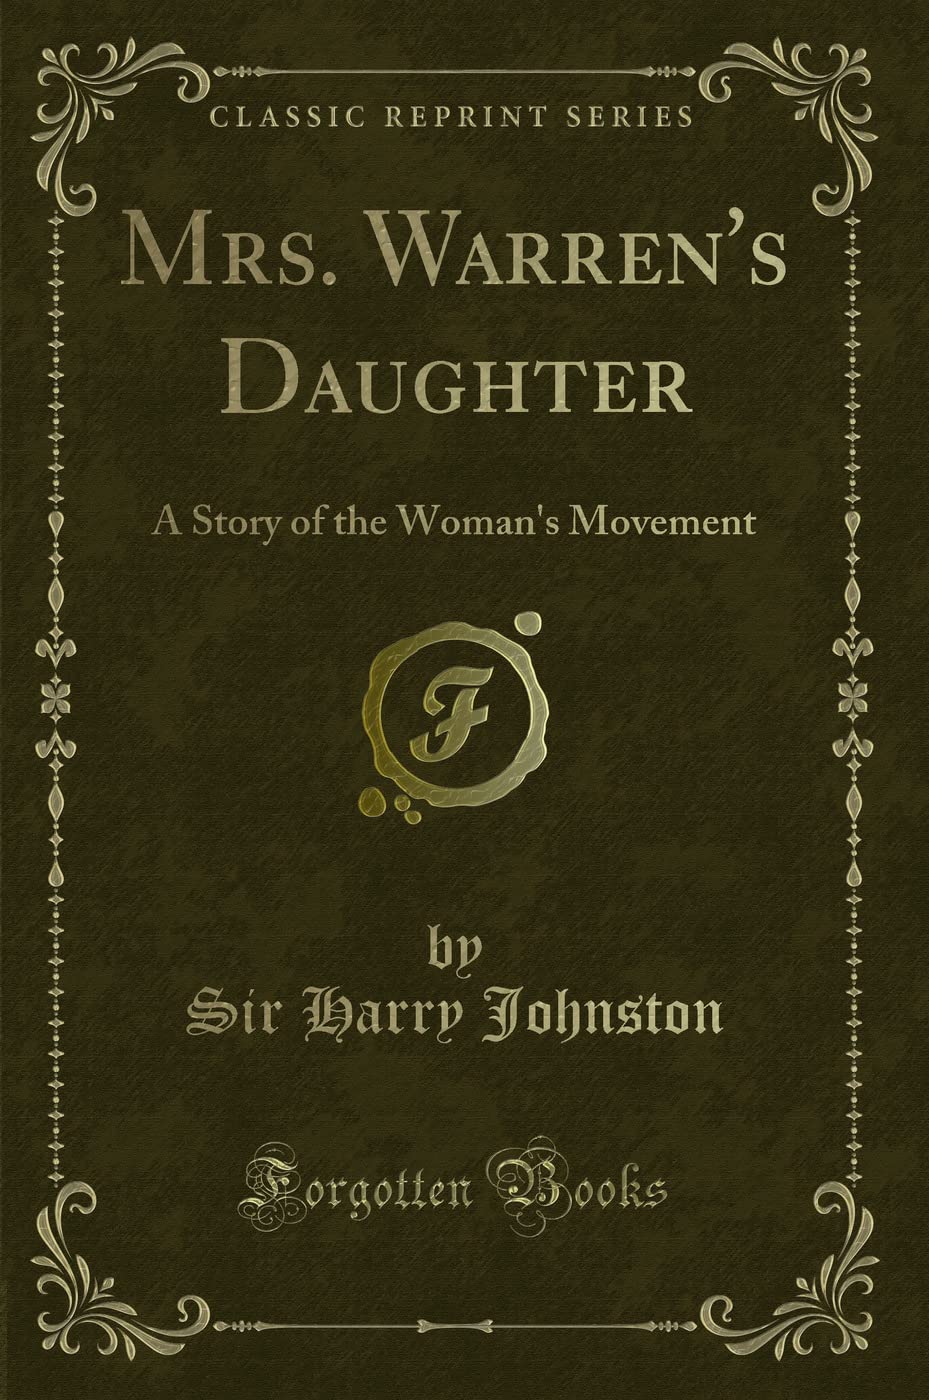 Mrs. Warren's Daughter